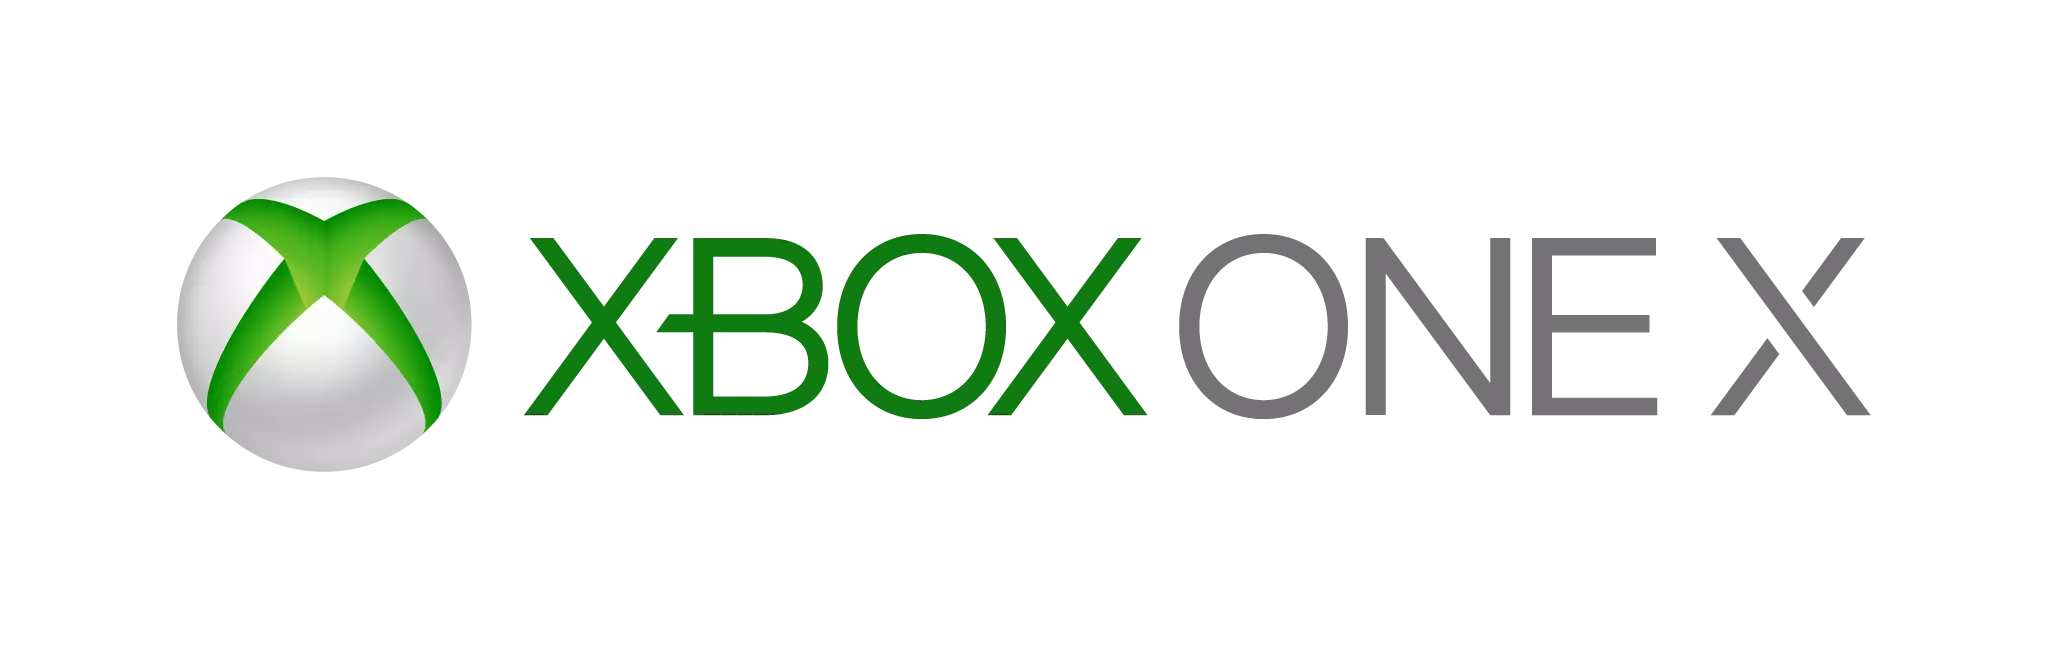 Логотип платформы Xbox One X